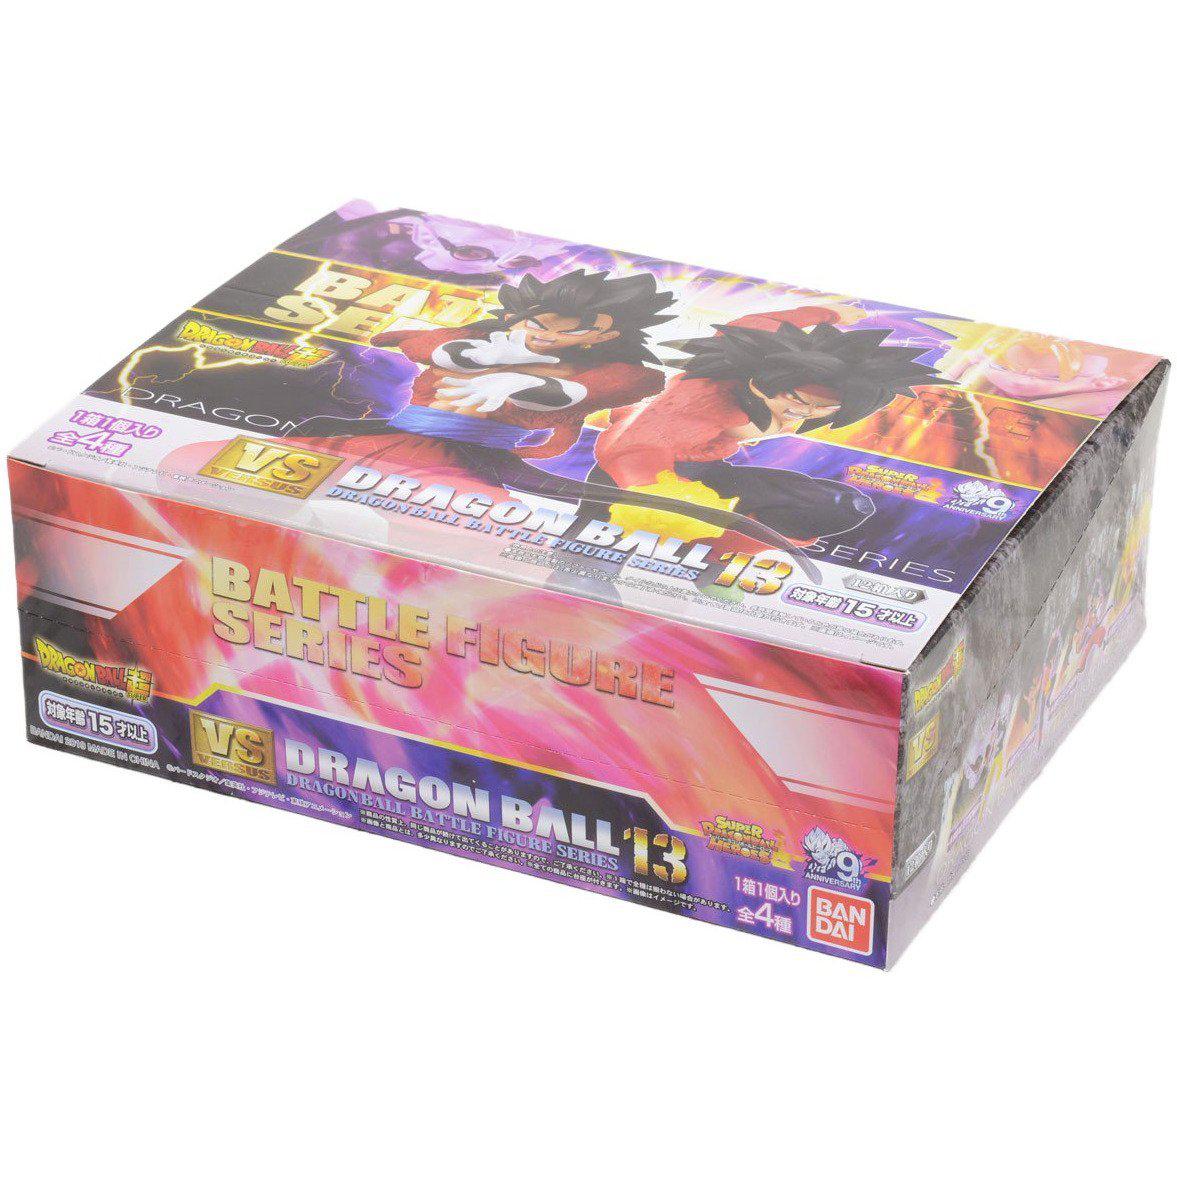 Dragon Ball Super Vs Dragon Ball 13-Display Box (Set of 12)-Bandai-Ace Cards &amp; Collectibles